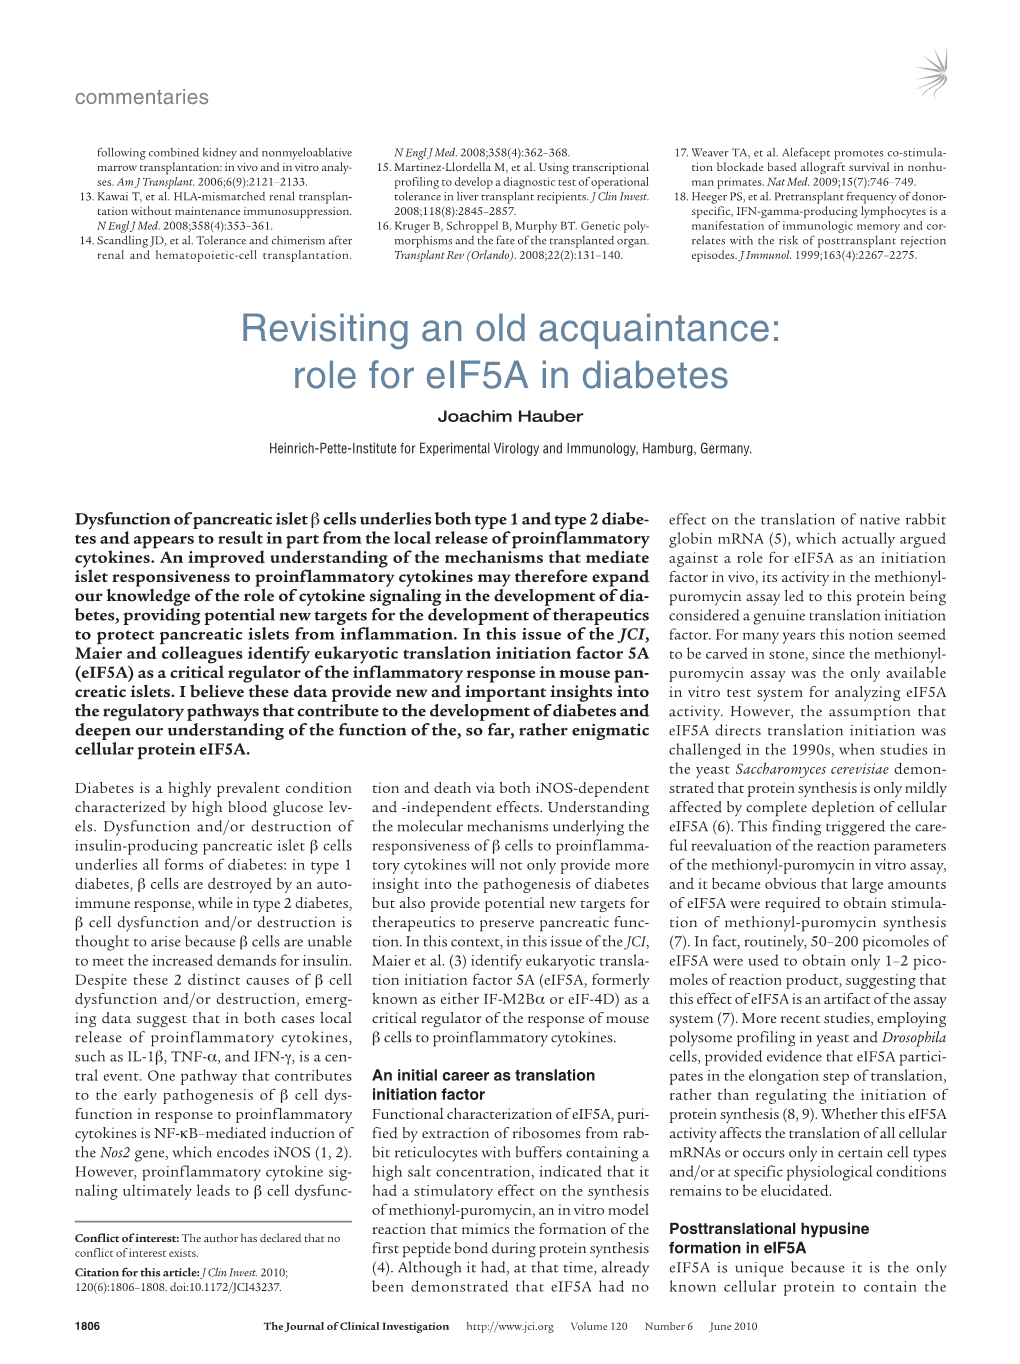 Role for Eif5a in Diabetes Joachim Hauber